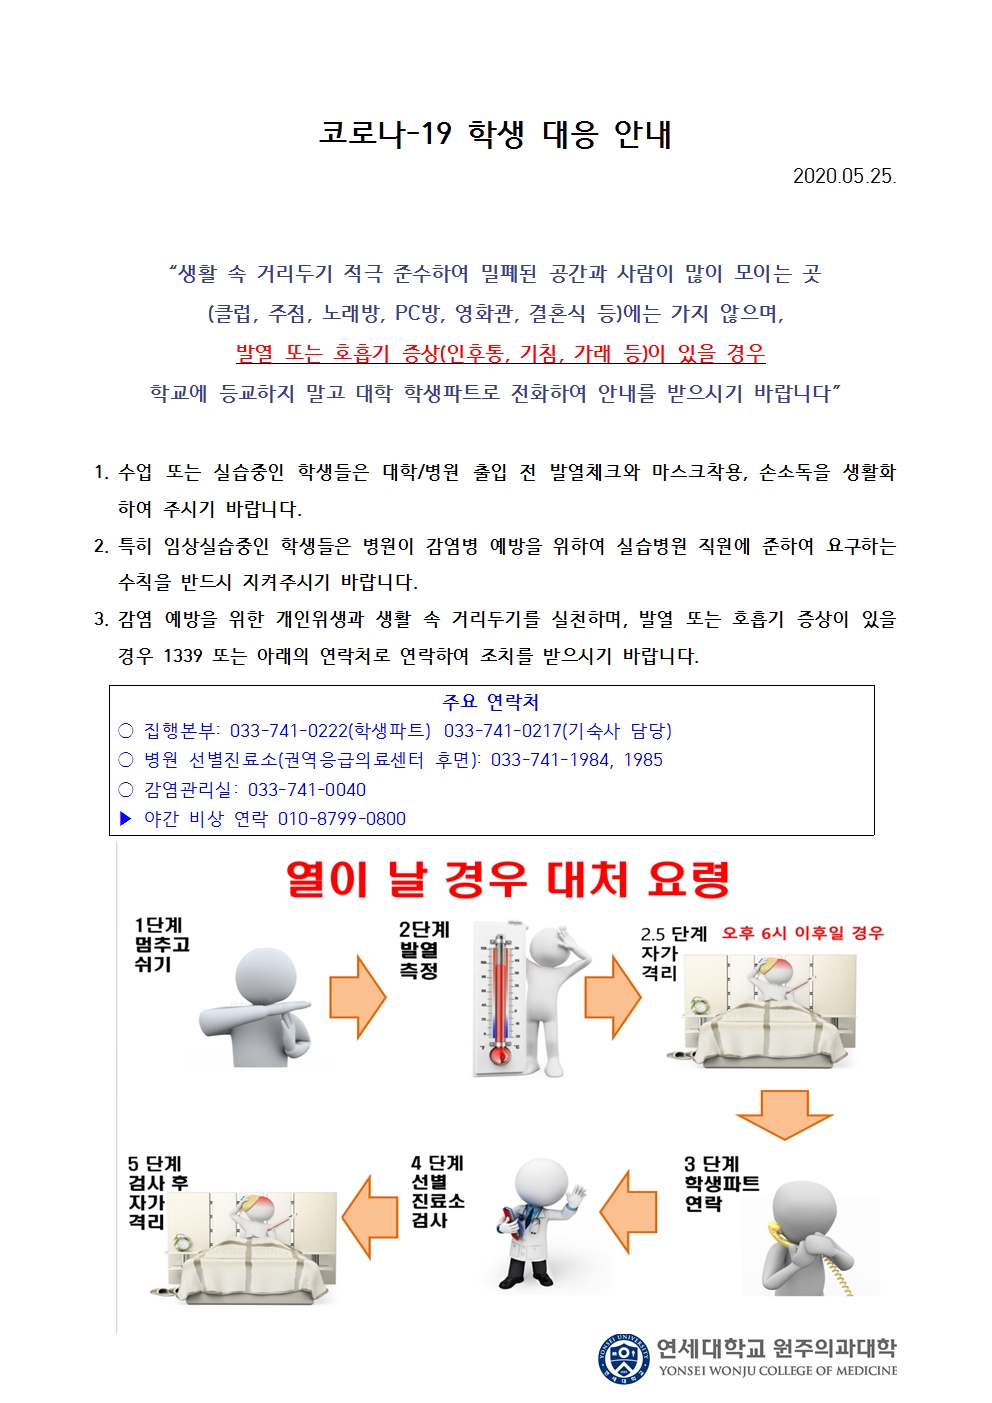 코로나-19 학생 대응 안내(2020.05.25.)_팝업.jpg